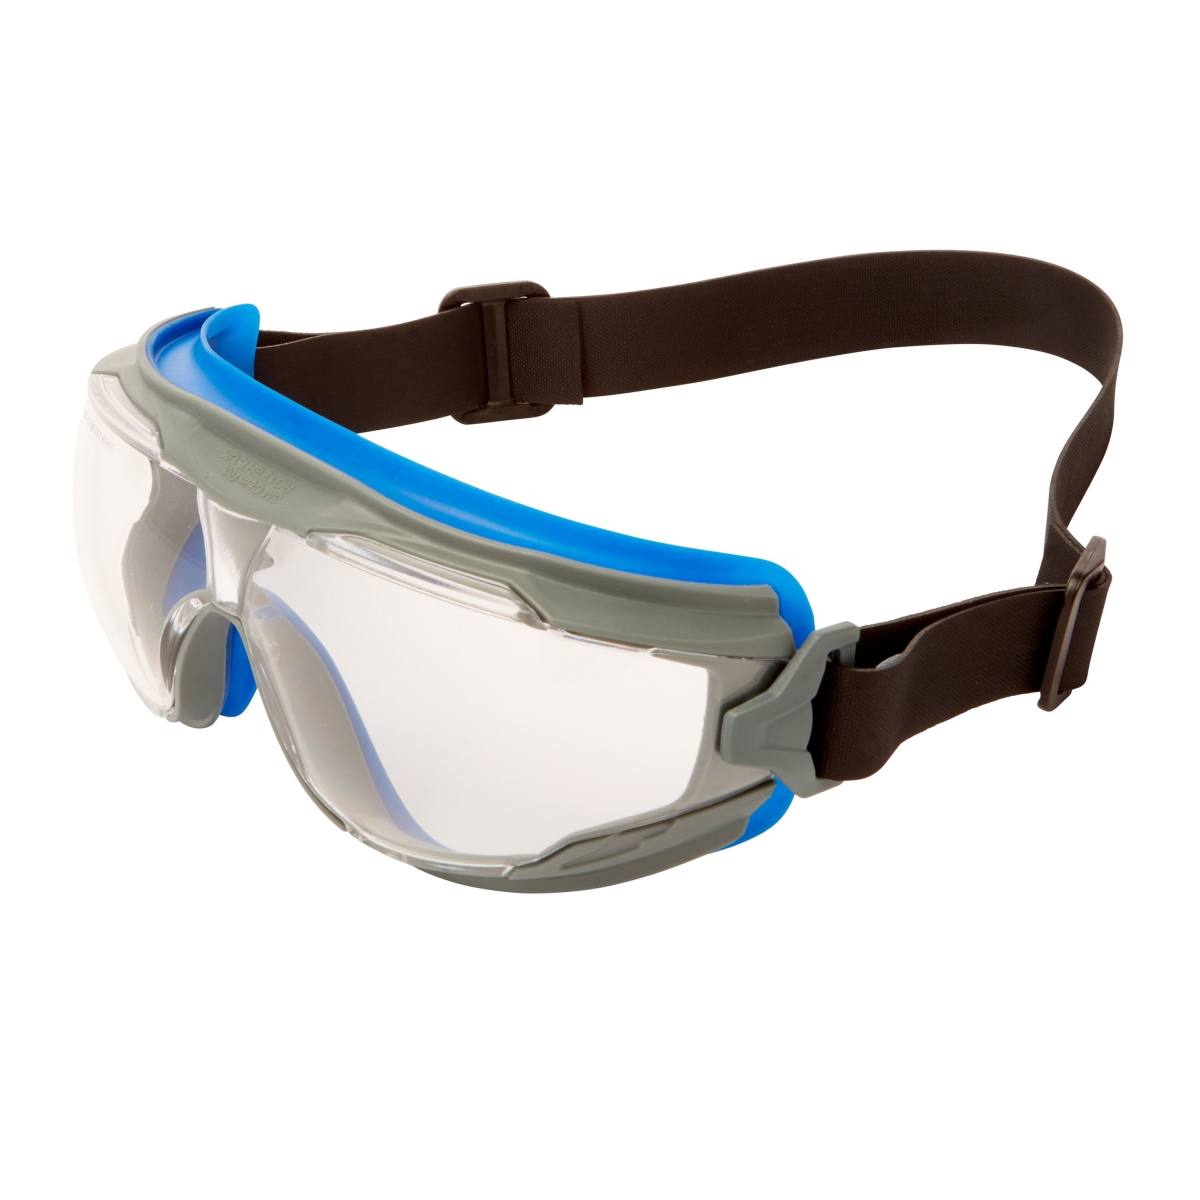 3M Gafas de visión total GoggleGear 500 GG501NSGAF-BLU, esterilizables en autoclave, montura gris azulada, cinta de neopreno negra, lentes transparentes